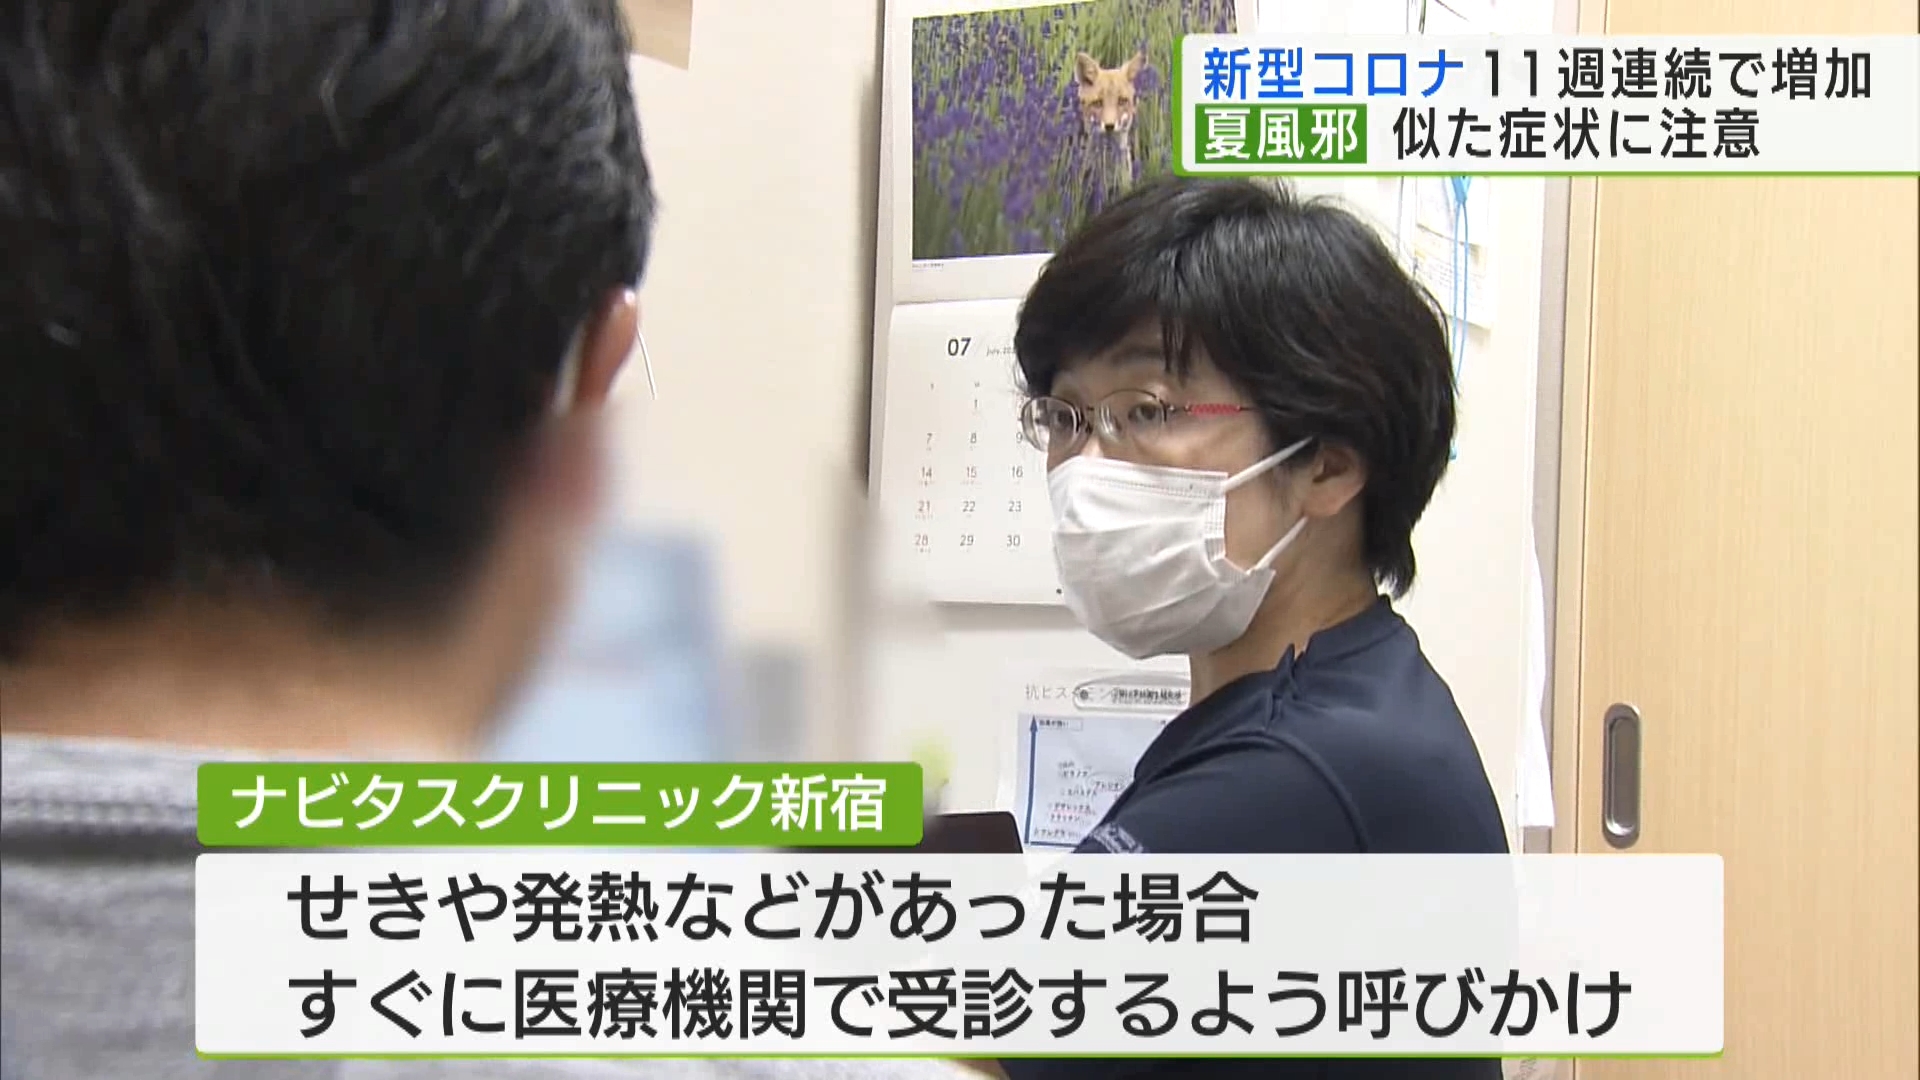 東京都内で新型コロナウイルスの感染者数が11週連続で増加しています。都内の医療機関コロナの陽性率が上がっていて、いわゆる“夏風邪”に似た症状の場合でも診療を受けるよう呼びかけています。